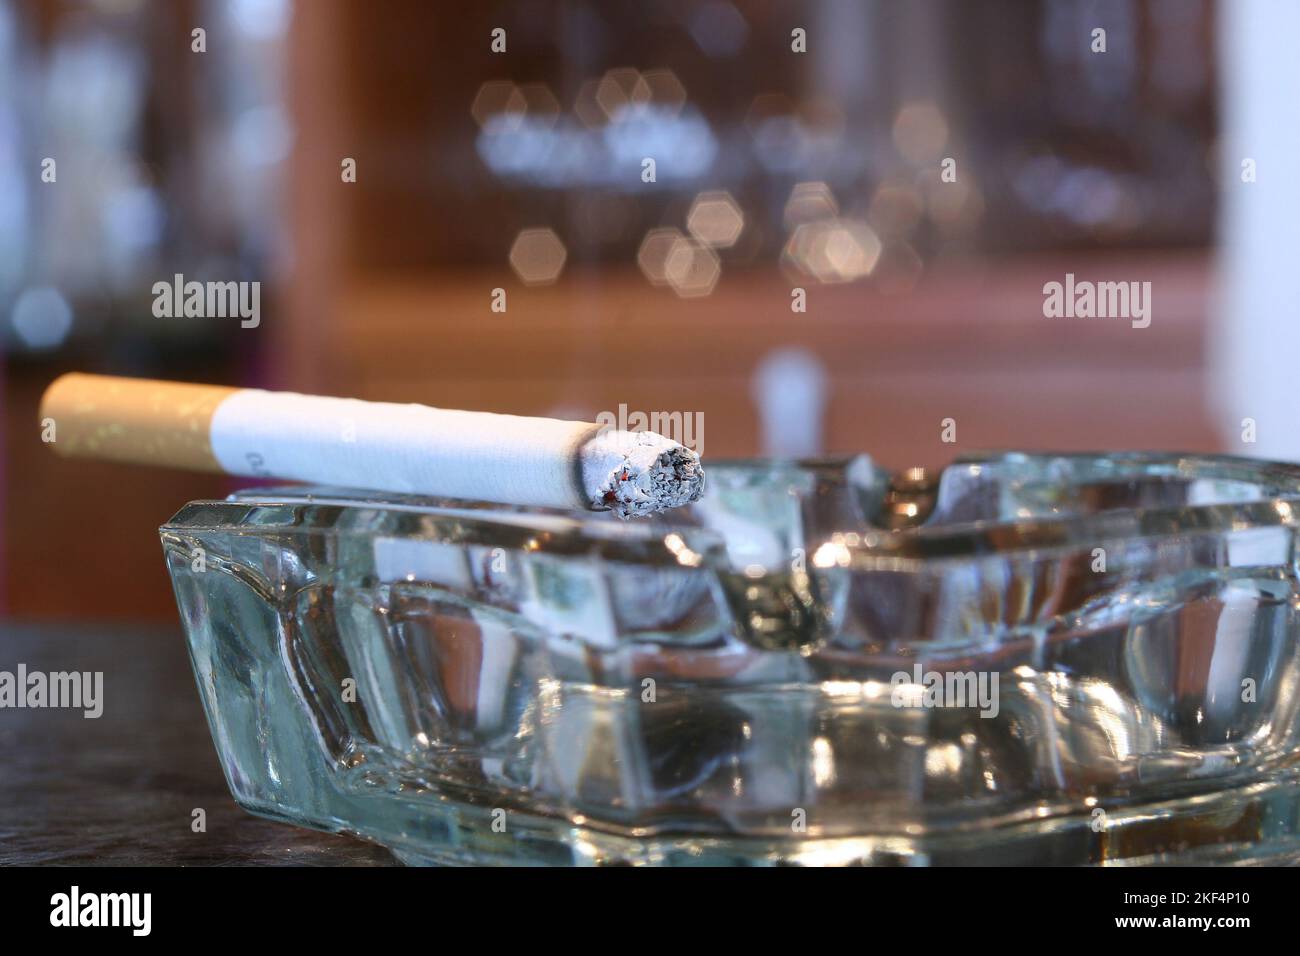 Bitte nicht rauchen, voller Aschenbecher, Rauchverbot, Stock Photo